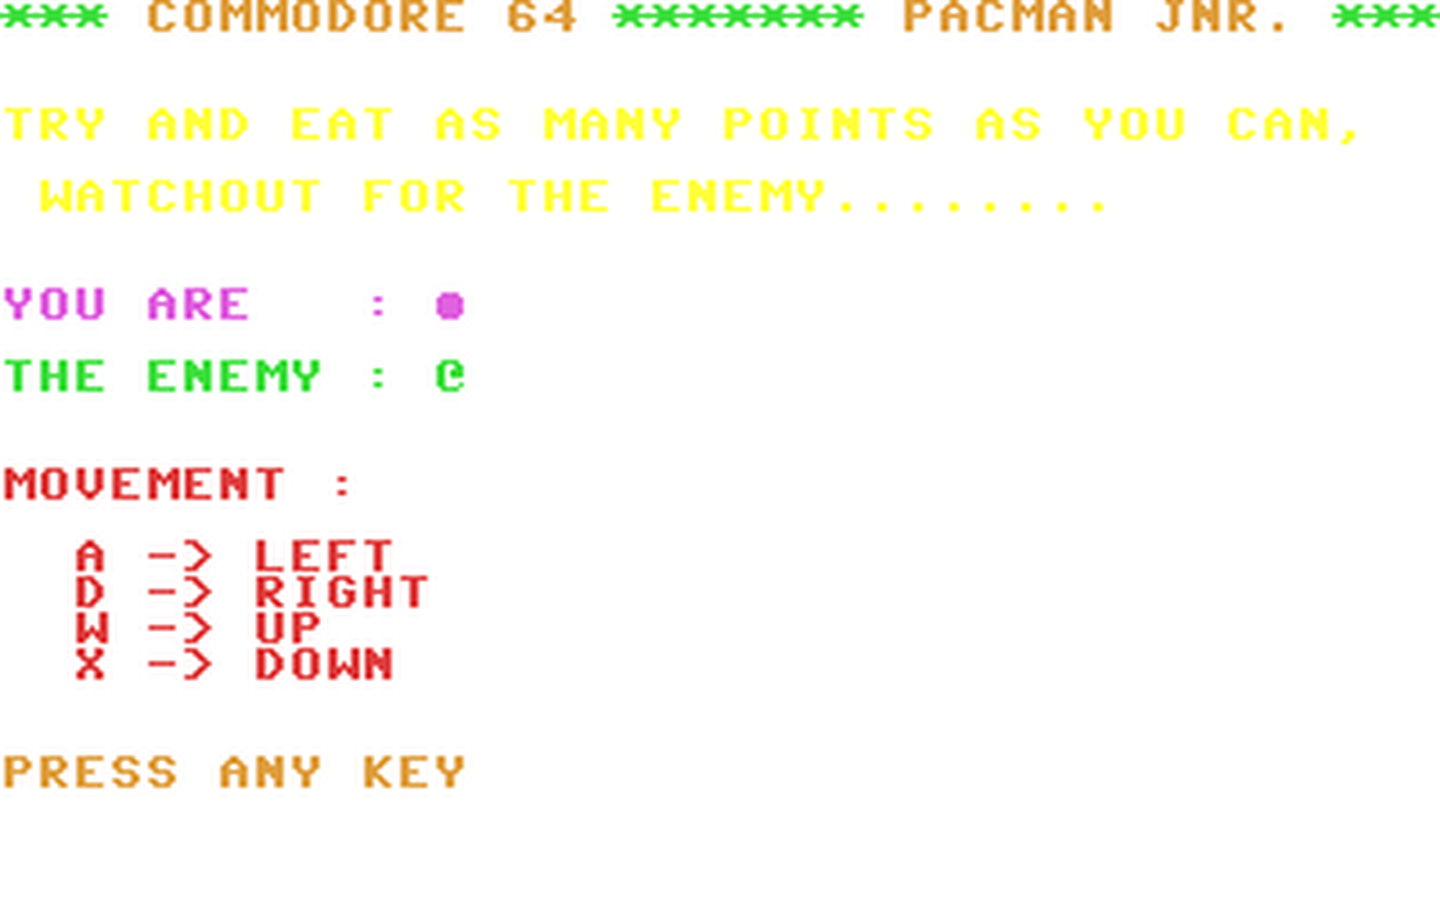 C64 GameBase Pacman_Jnr. Robtek_Ltd. 1986